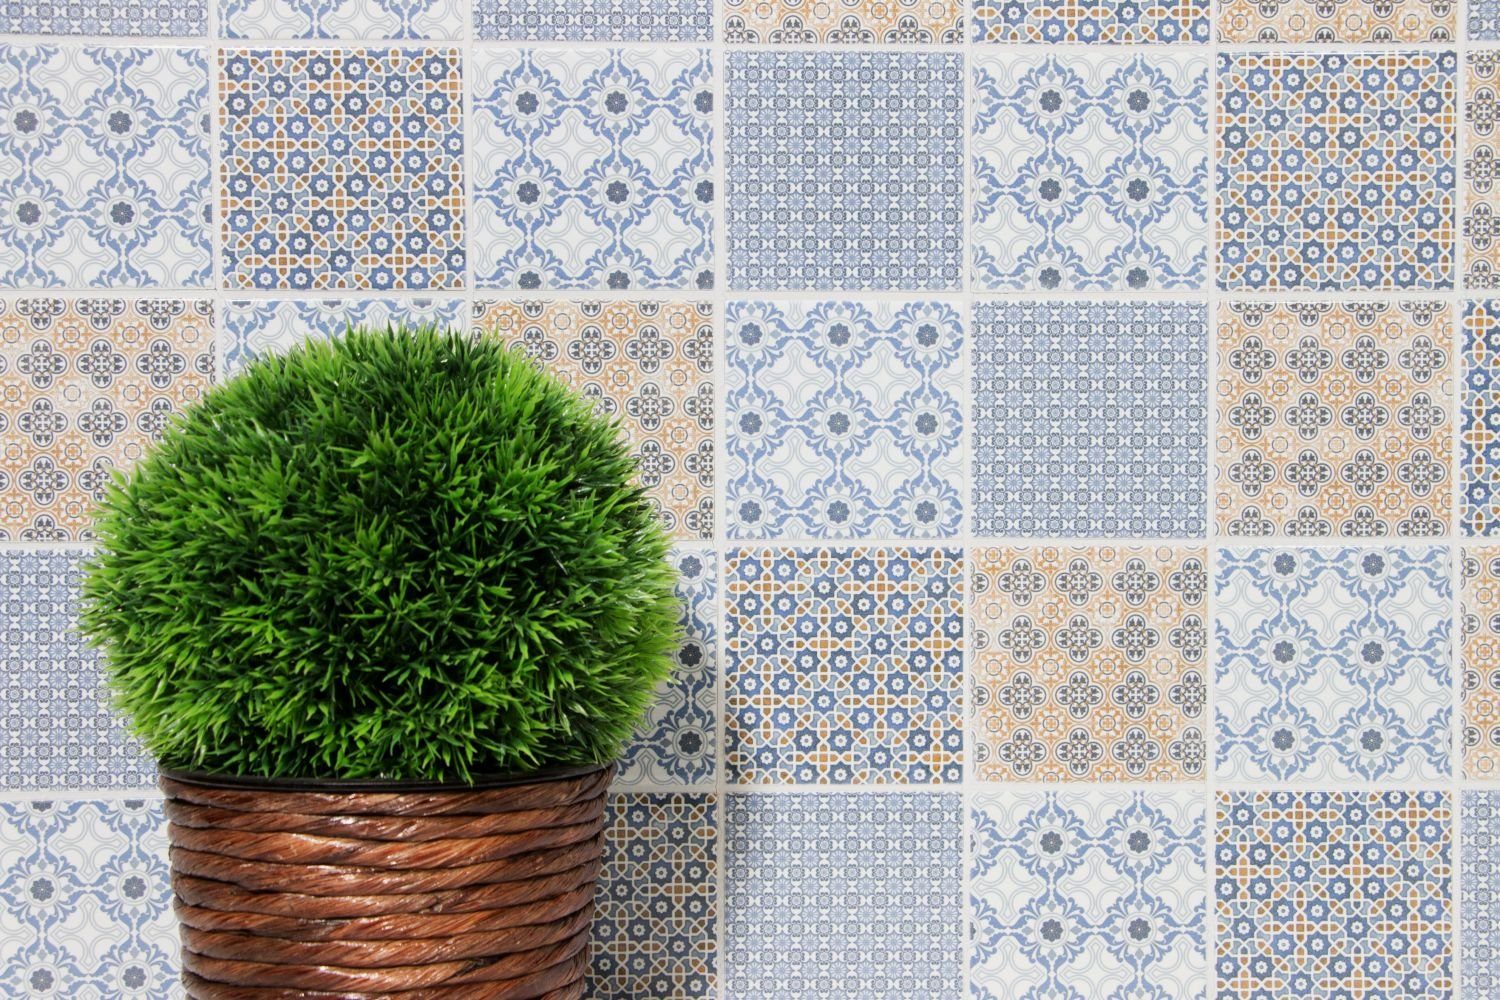 Mosani Mosaikfliesen Retro Vintage grau Mosaik blau weiß Küche orange Fliesenspiegel